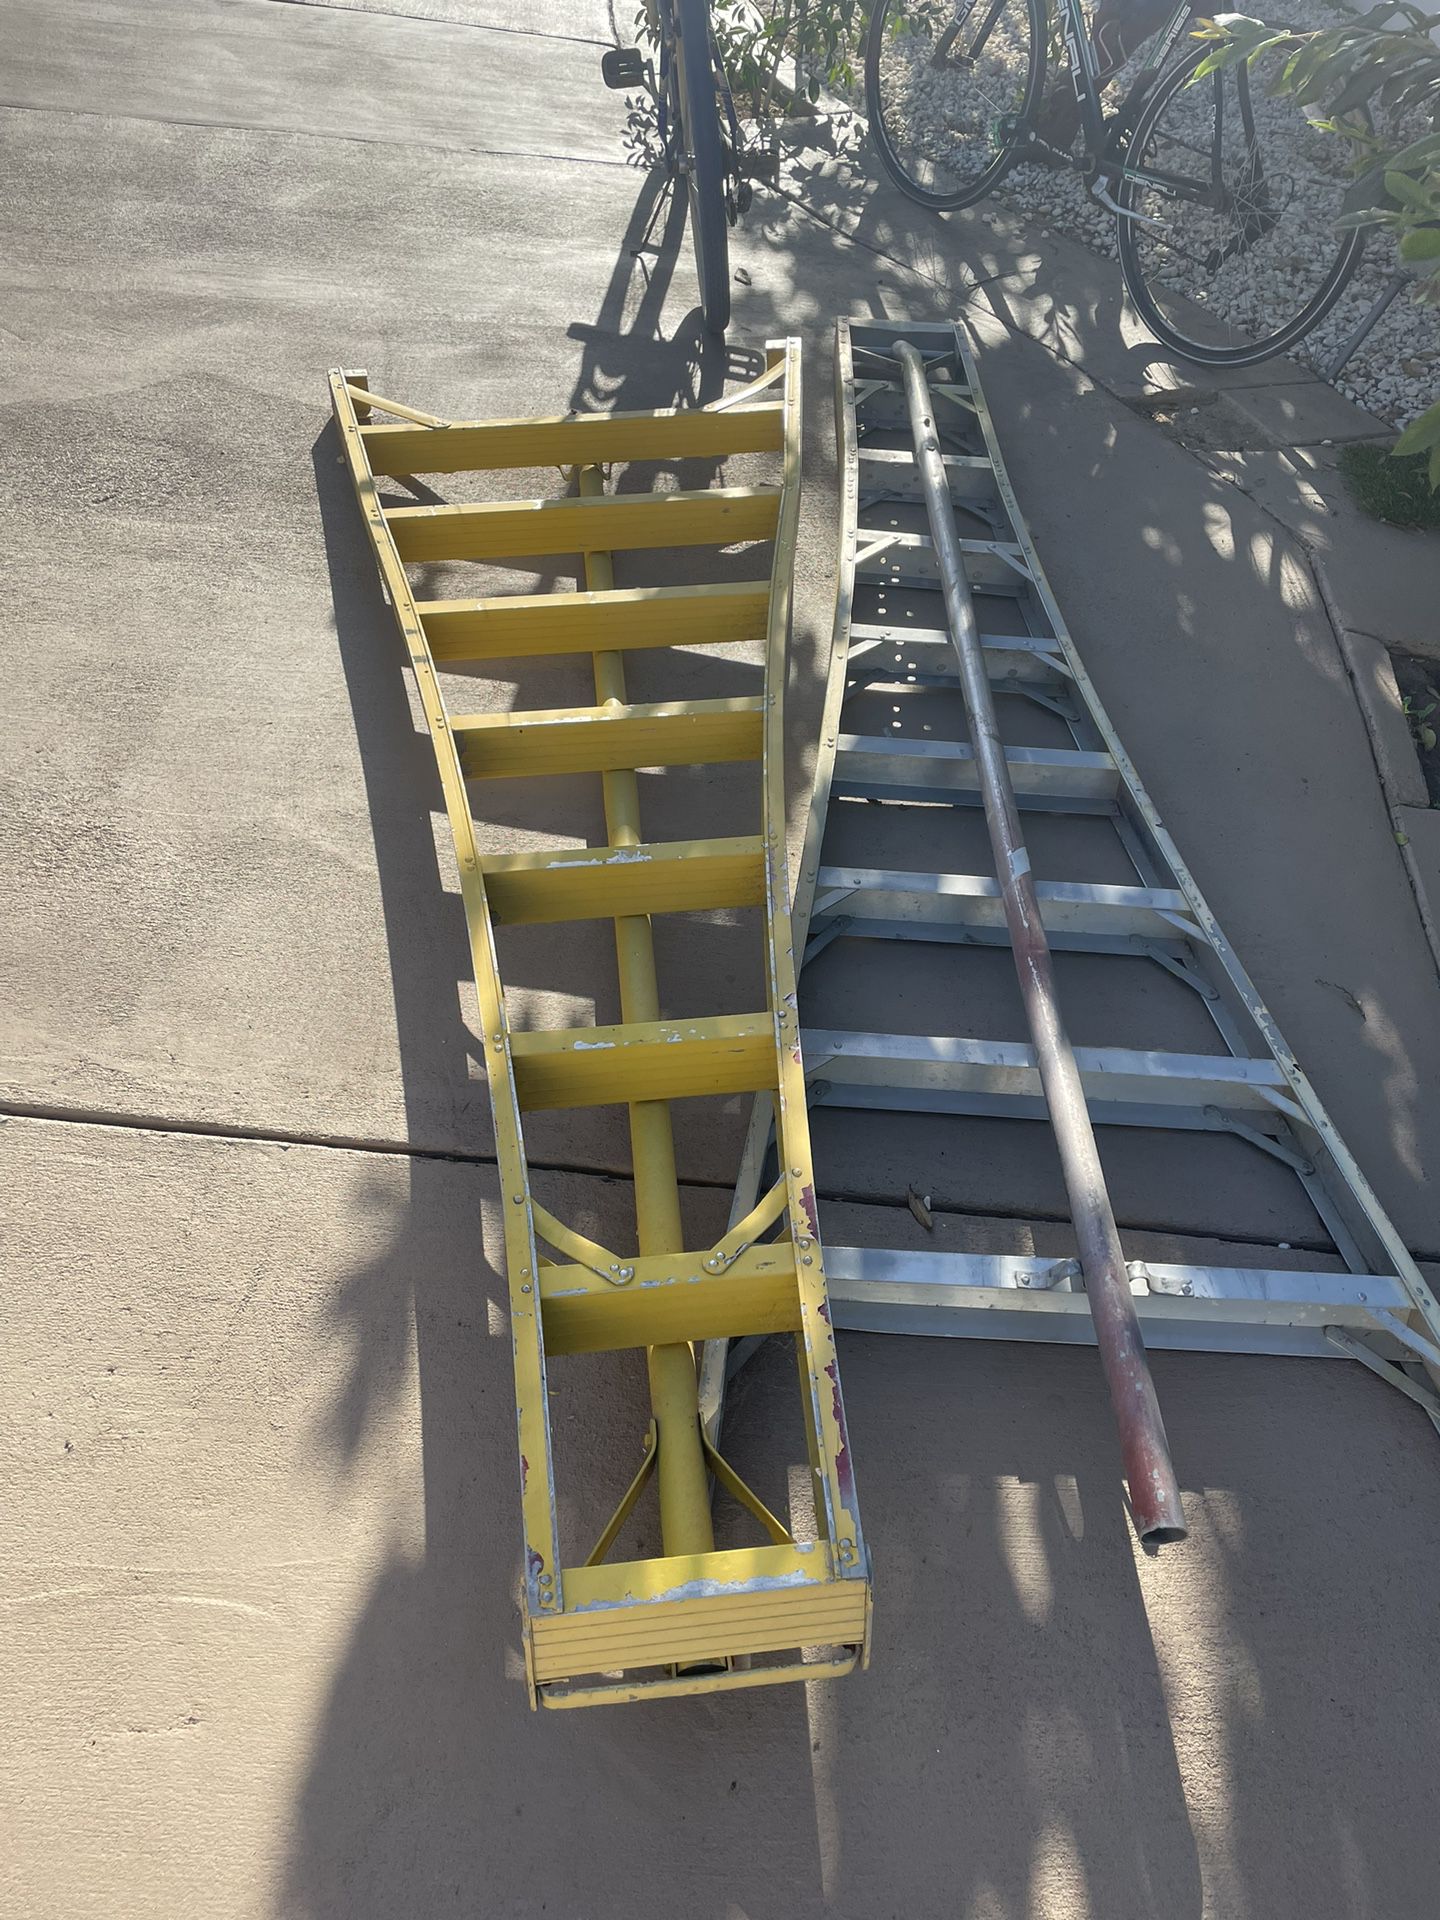 9 Feet Ladders